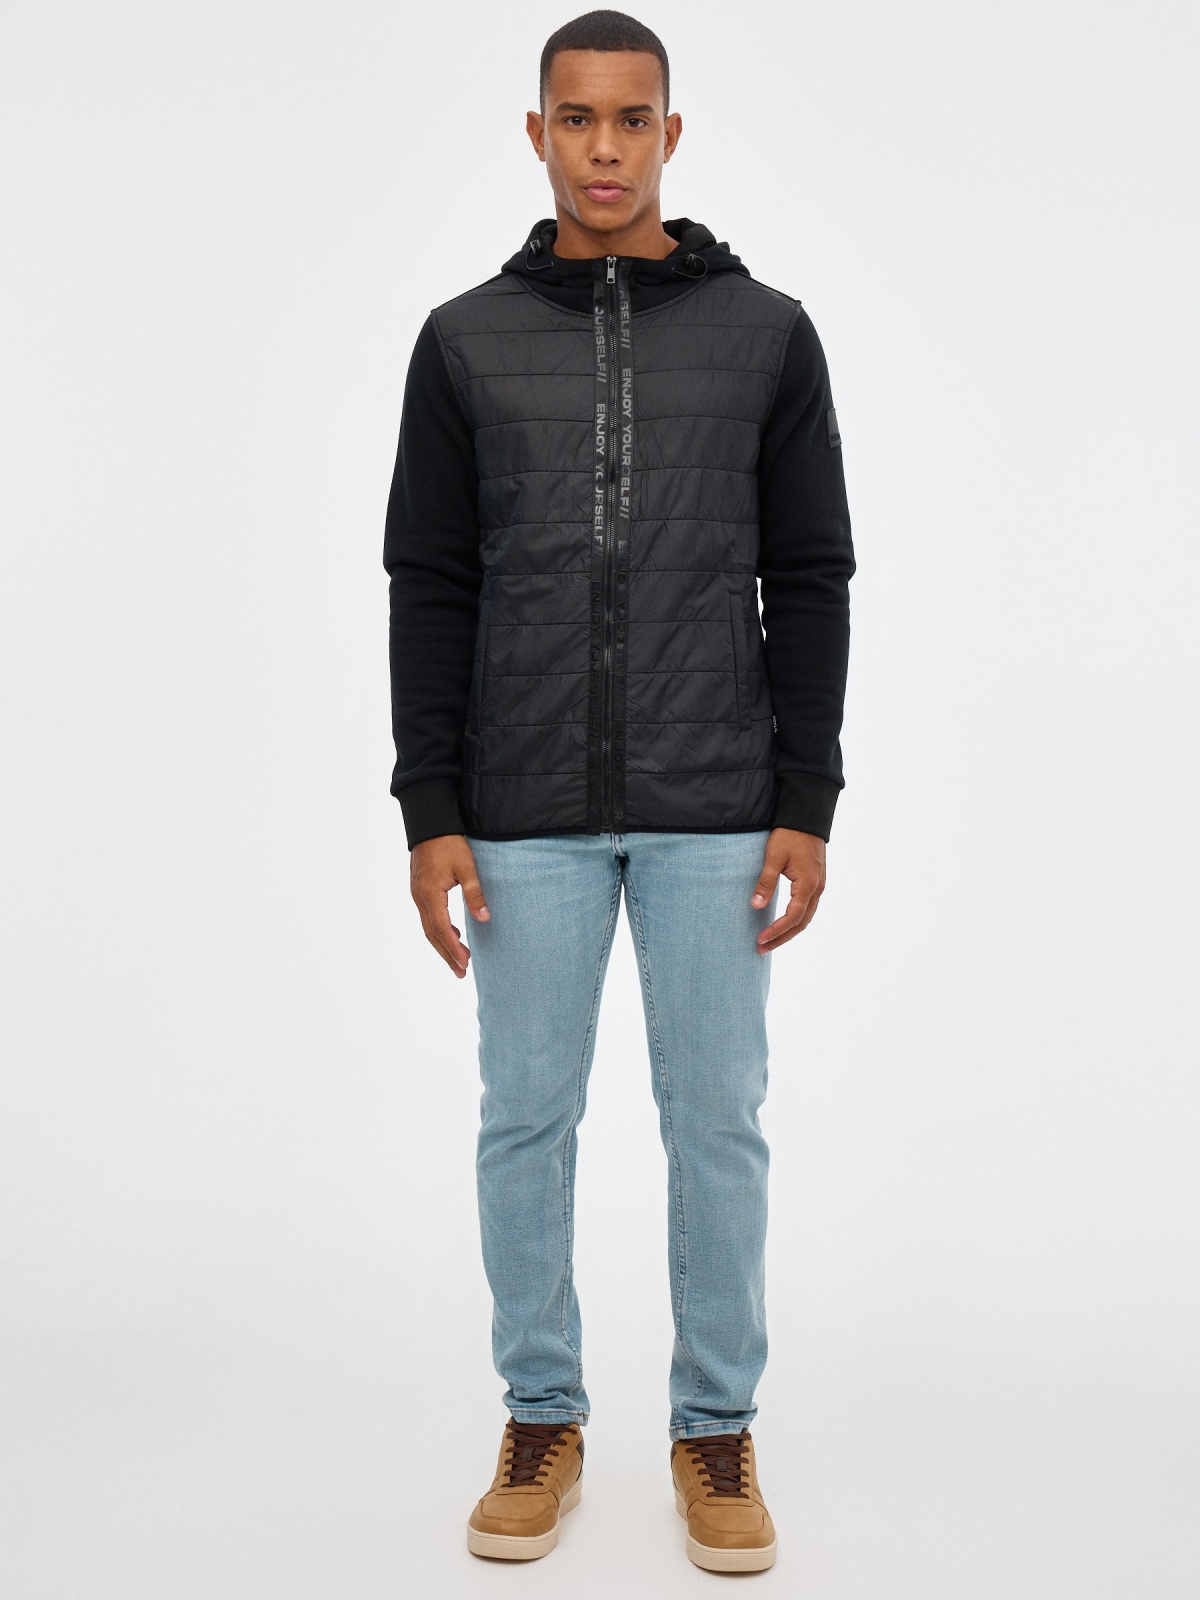 Fleece sweatshirt with zipper black front view